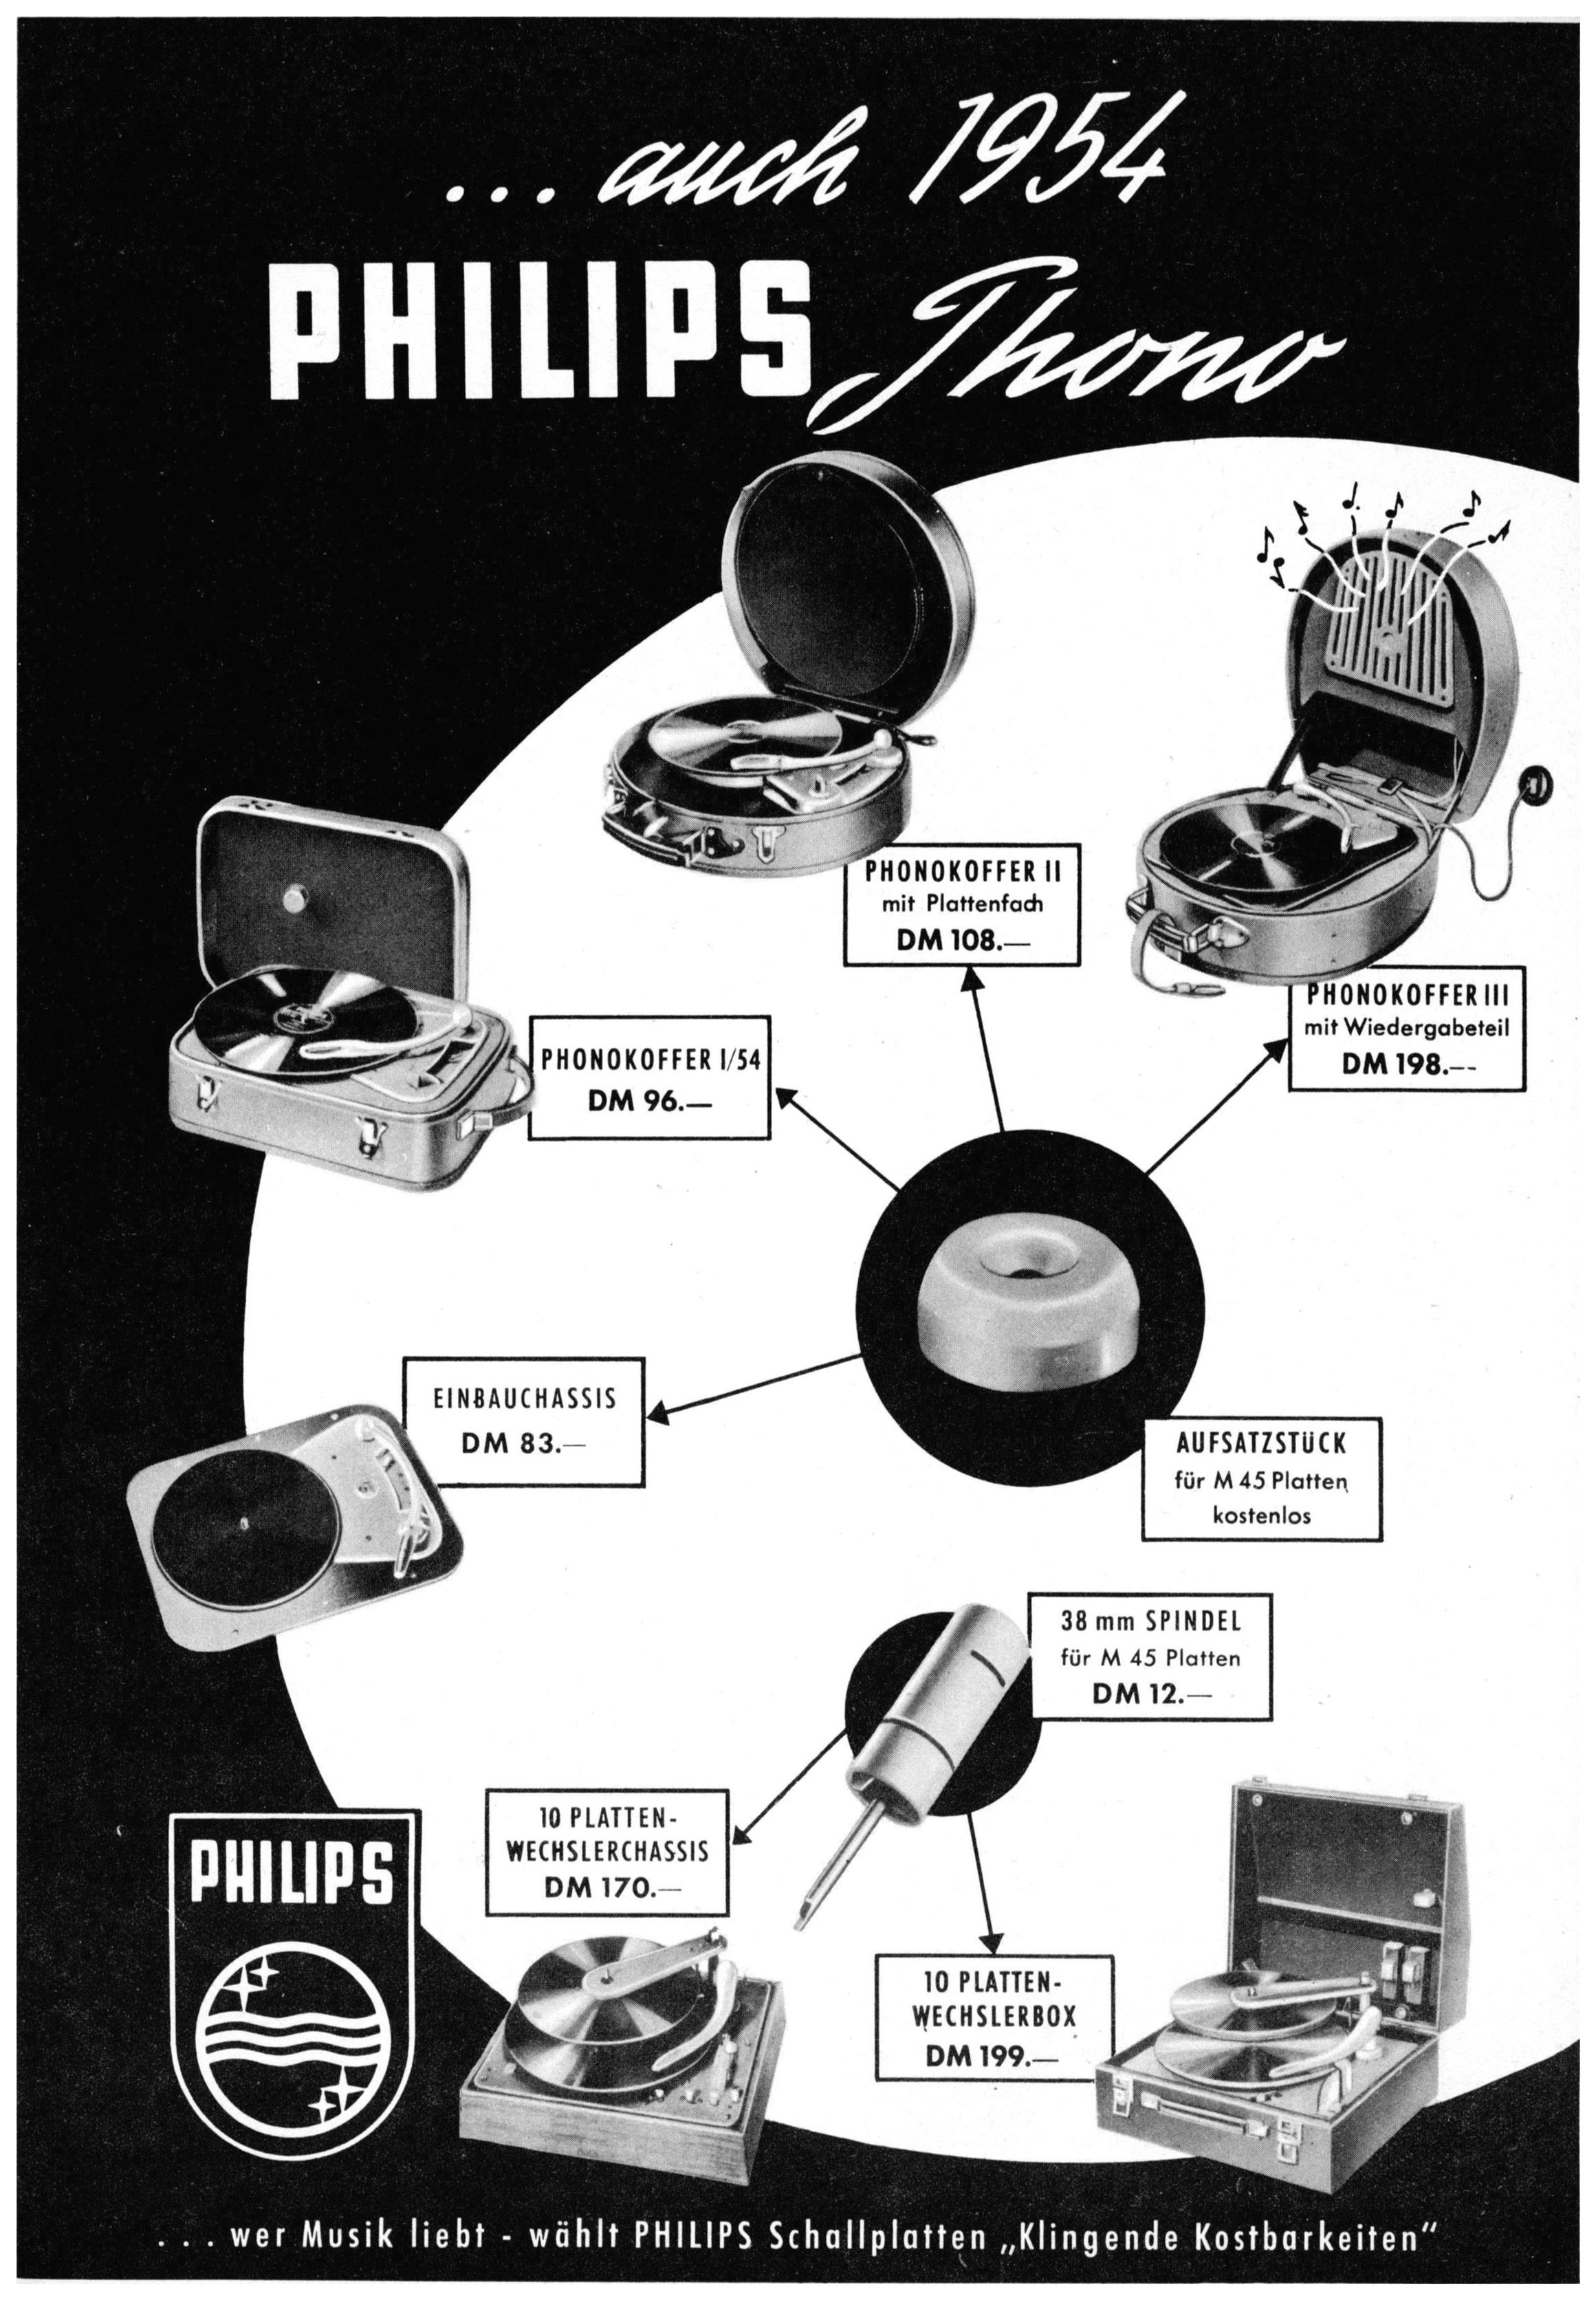 Philips 1954 05.jpg